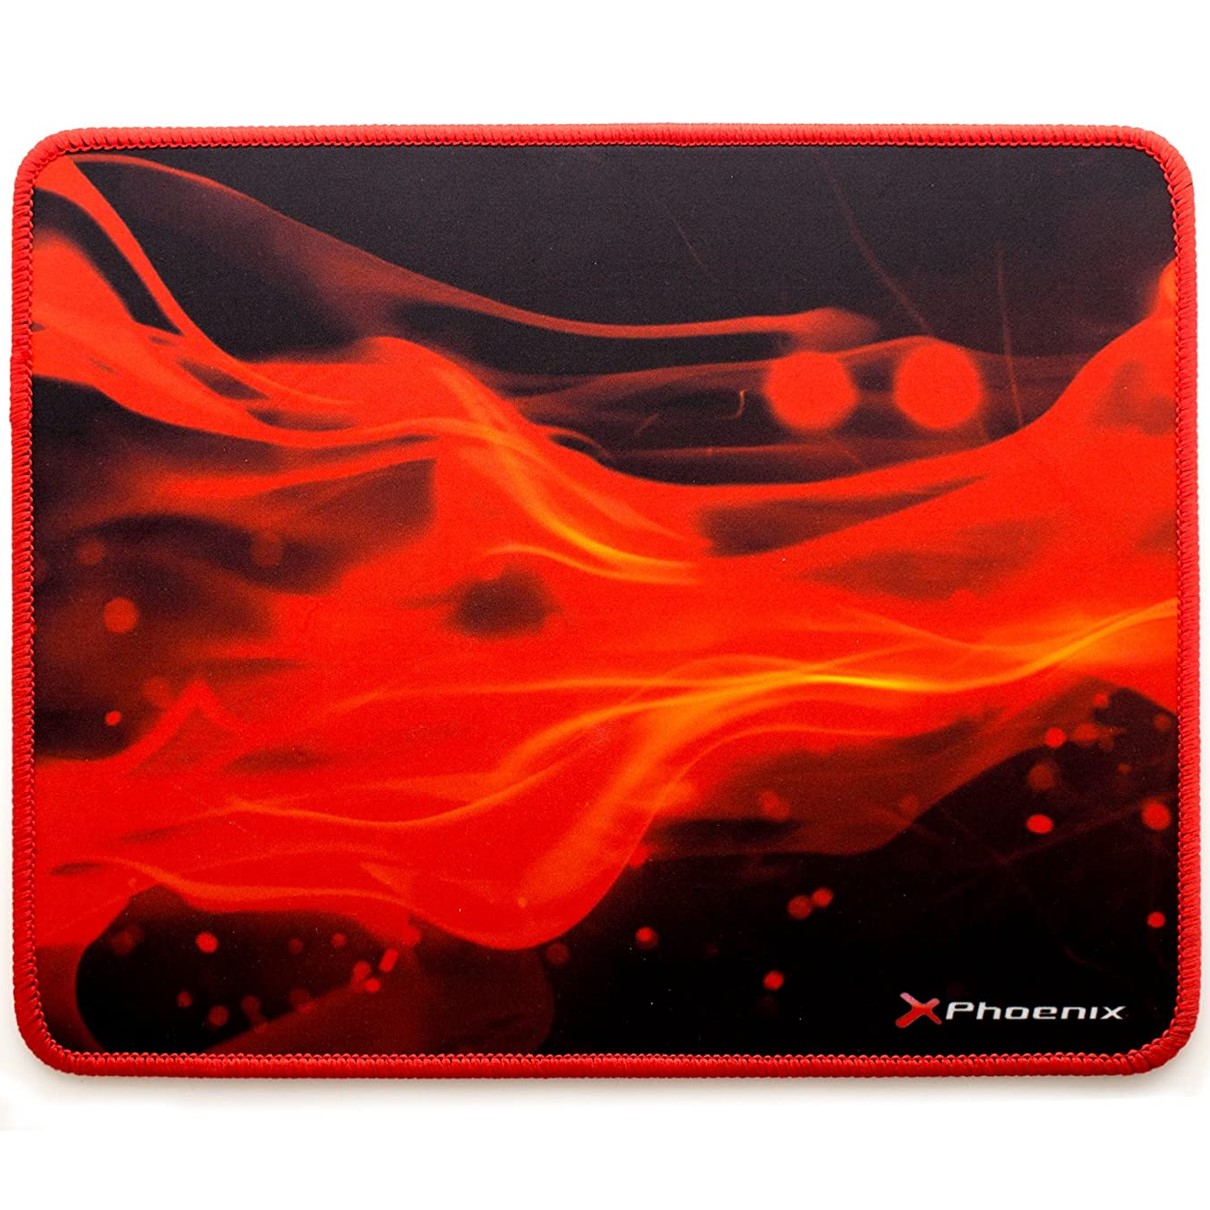 Alfombrilla phoenix phfactorpad - s gaming para mouse raton  tamaño s 280 x 220  x 3 mm silicona suave antideslizante rojo y negro